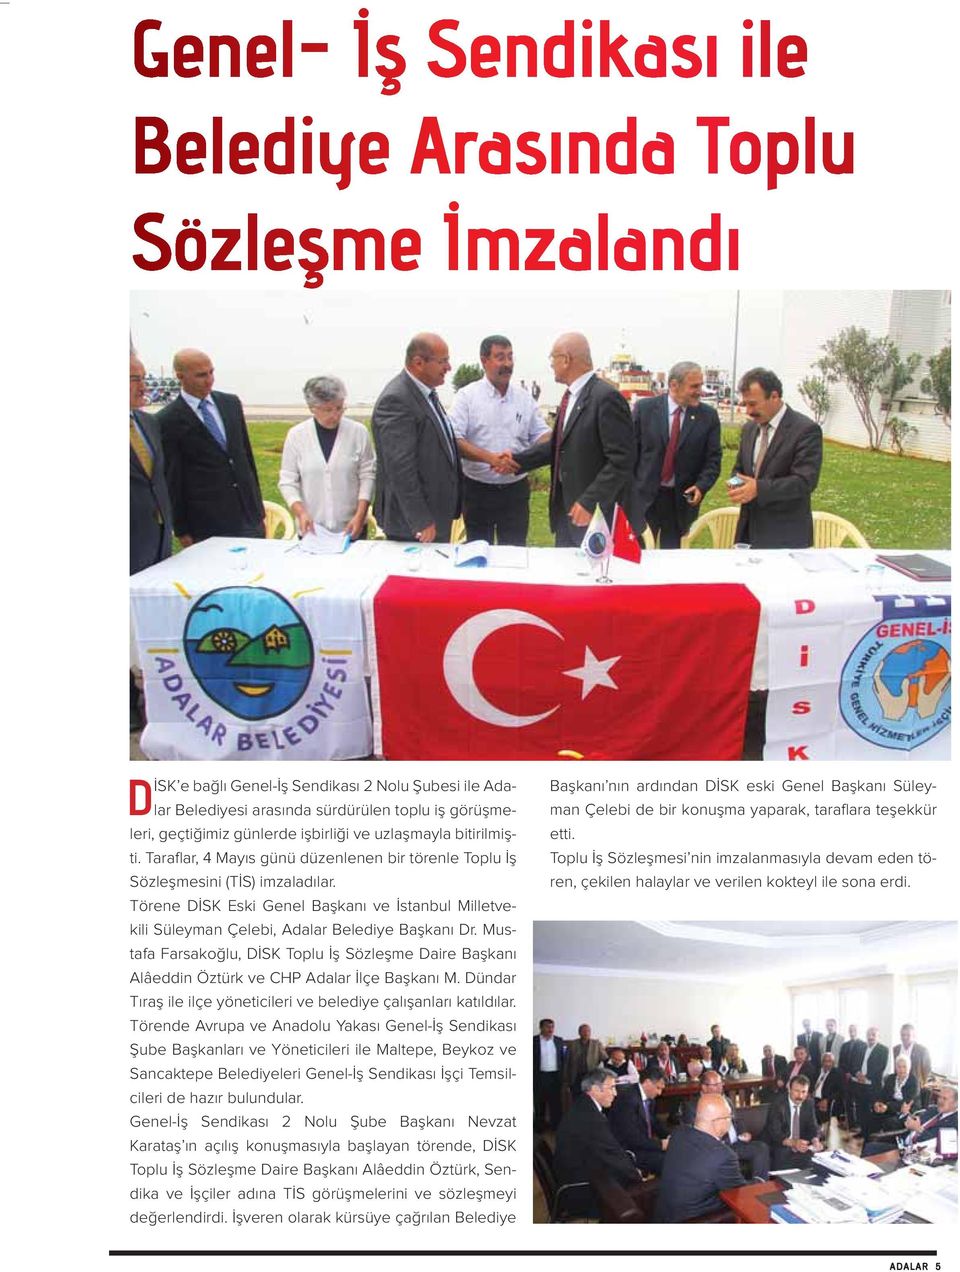 Mustafa Farsakoğlu, DİSK Toplu İş Sözleşme Daire Başkanı Alâeddin Öztürk ve CHP Adalar İlçe Başkanı M. Dündar Tıraş ile ilçe yöneticileri ve belediye çalışanları katıldılar.